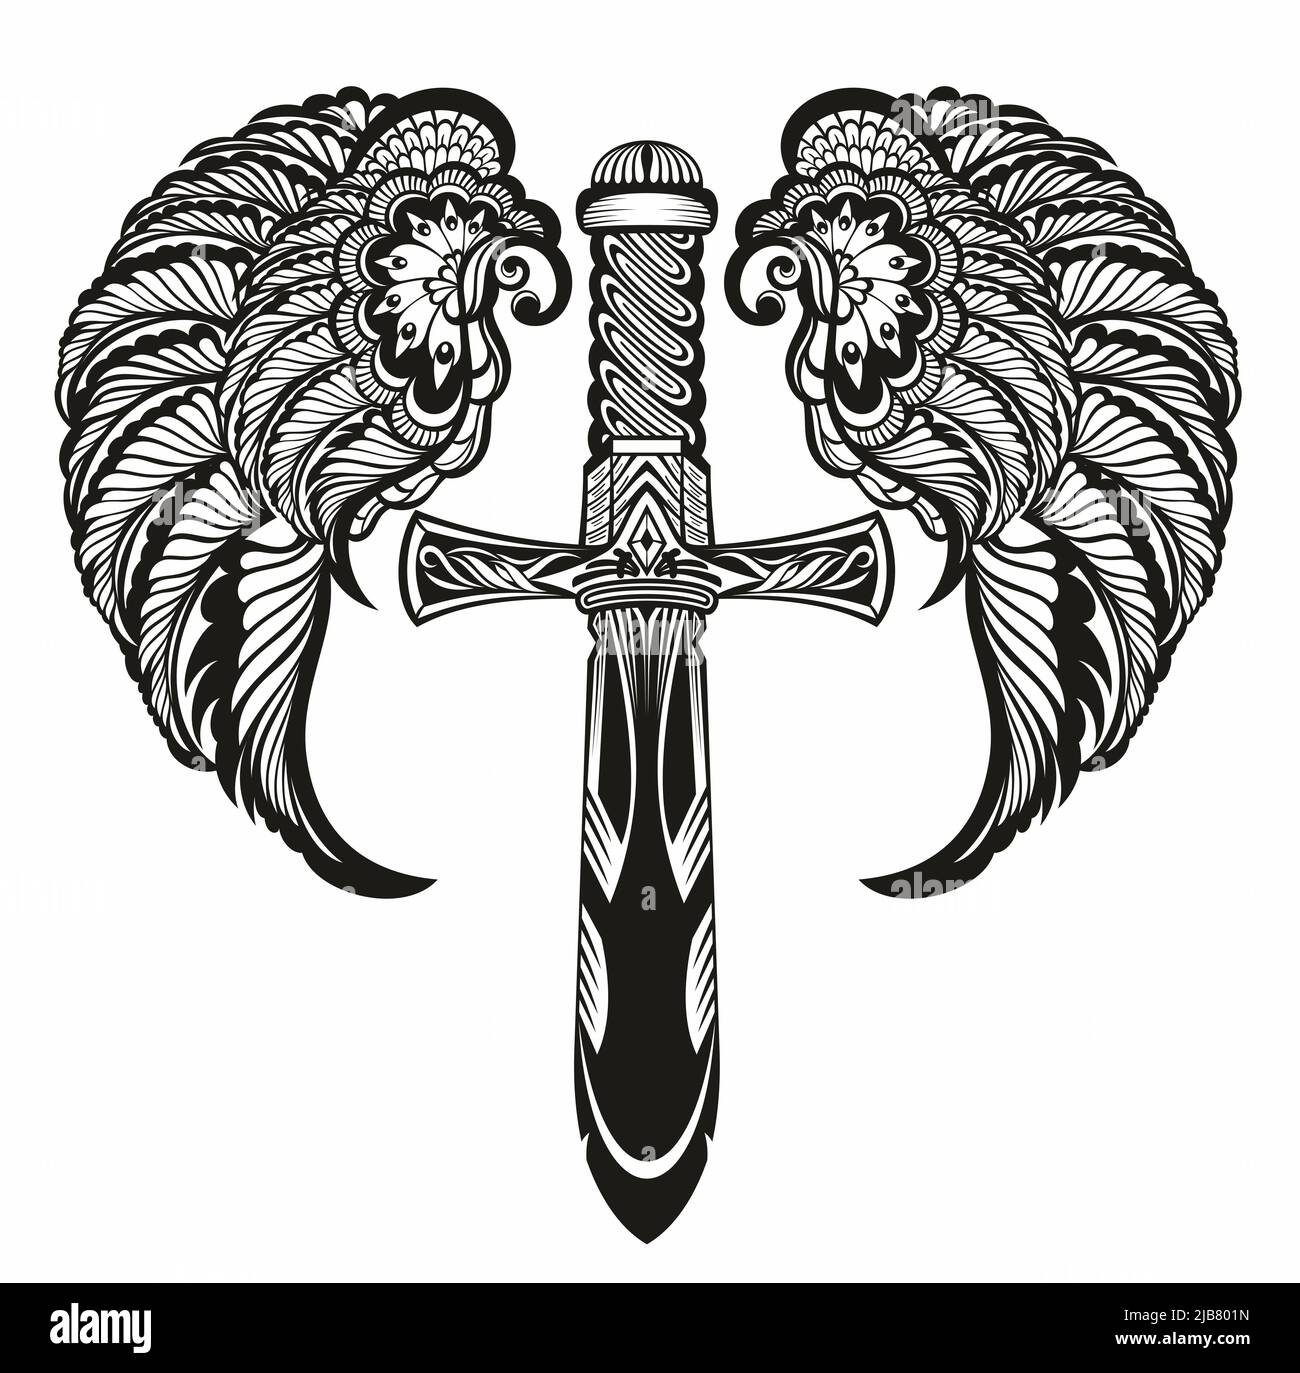 Крылатый меч elden. Тату меч на спине. Меч вектор. Крылатый меч. Ножи с эмблемой меч с крыльями.